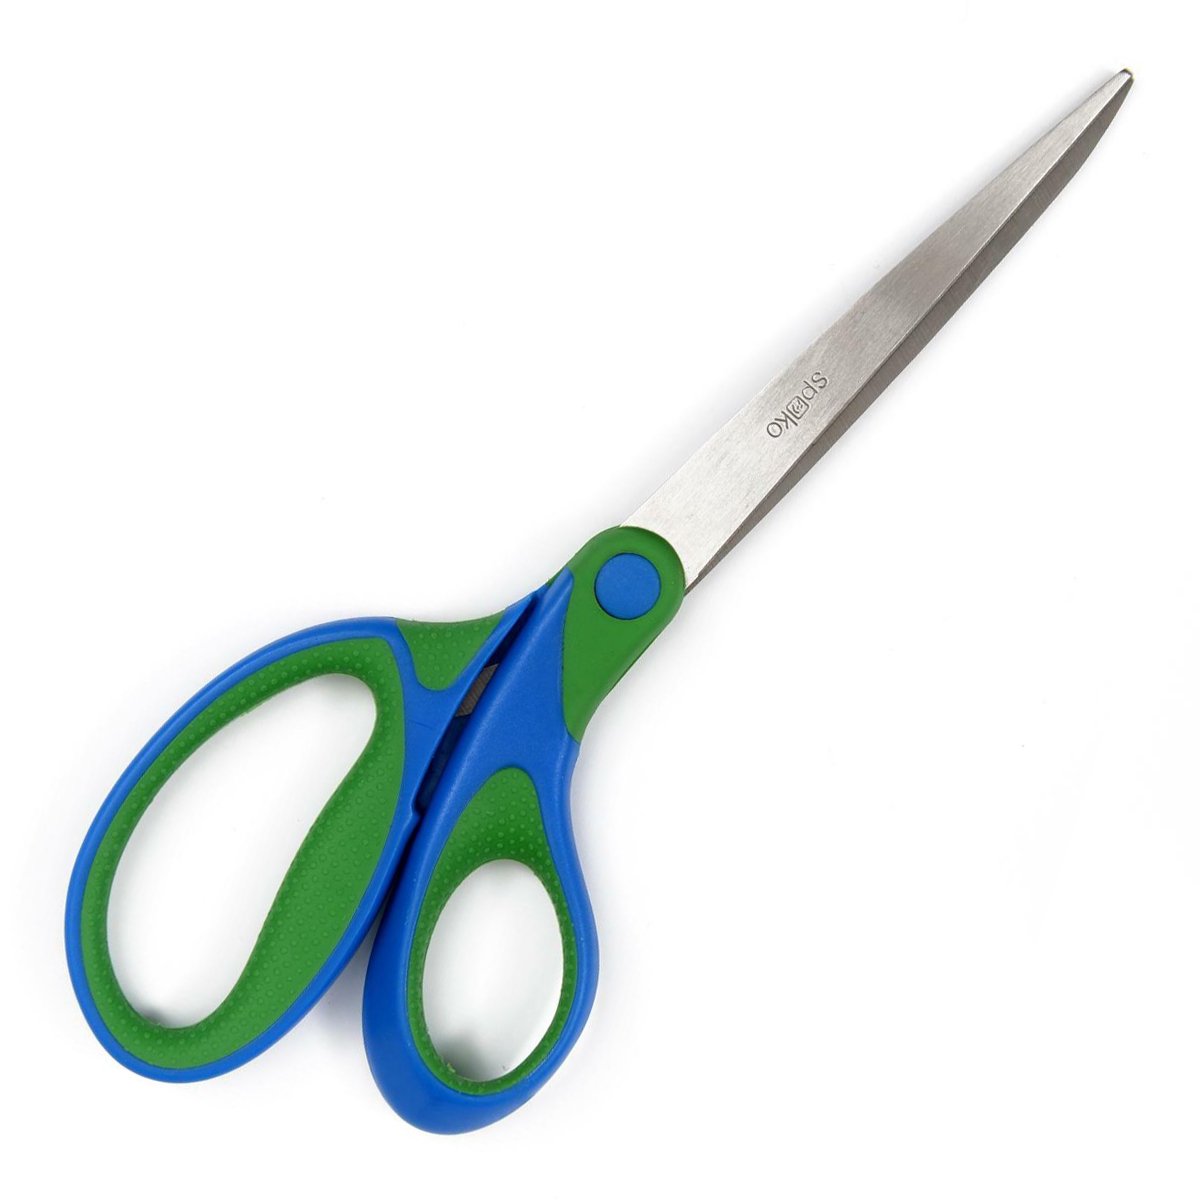 Spoko nůžky kancelářské Comfort, 21 cm, asymetrické, zeleno-modré - 12ks